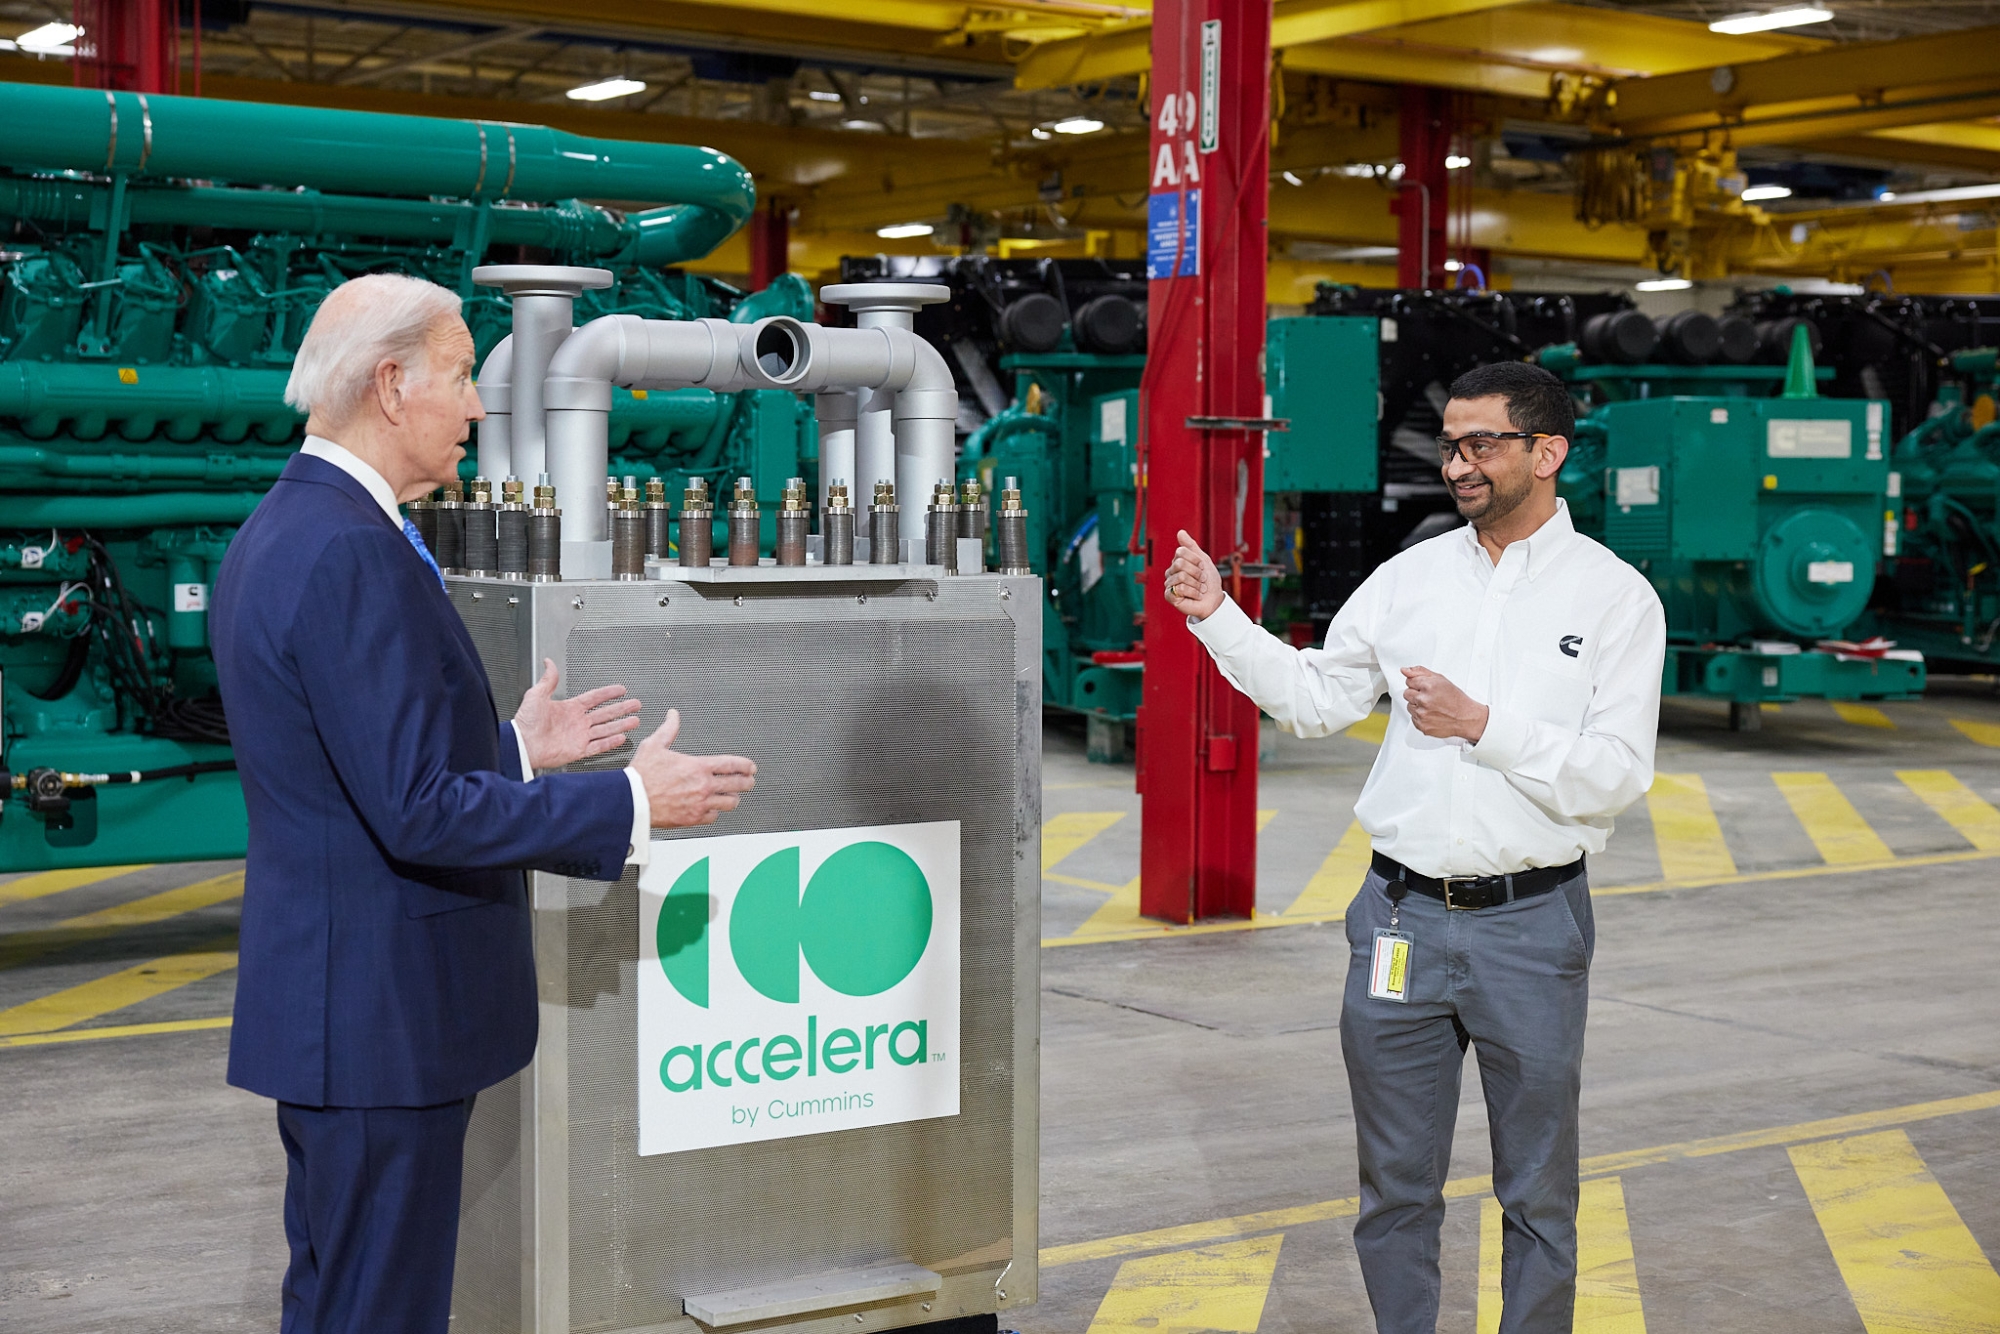 President Biden on tour of Fridley plant